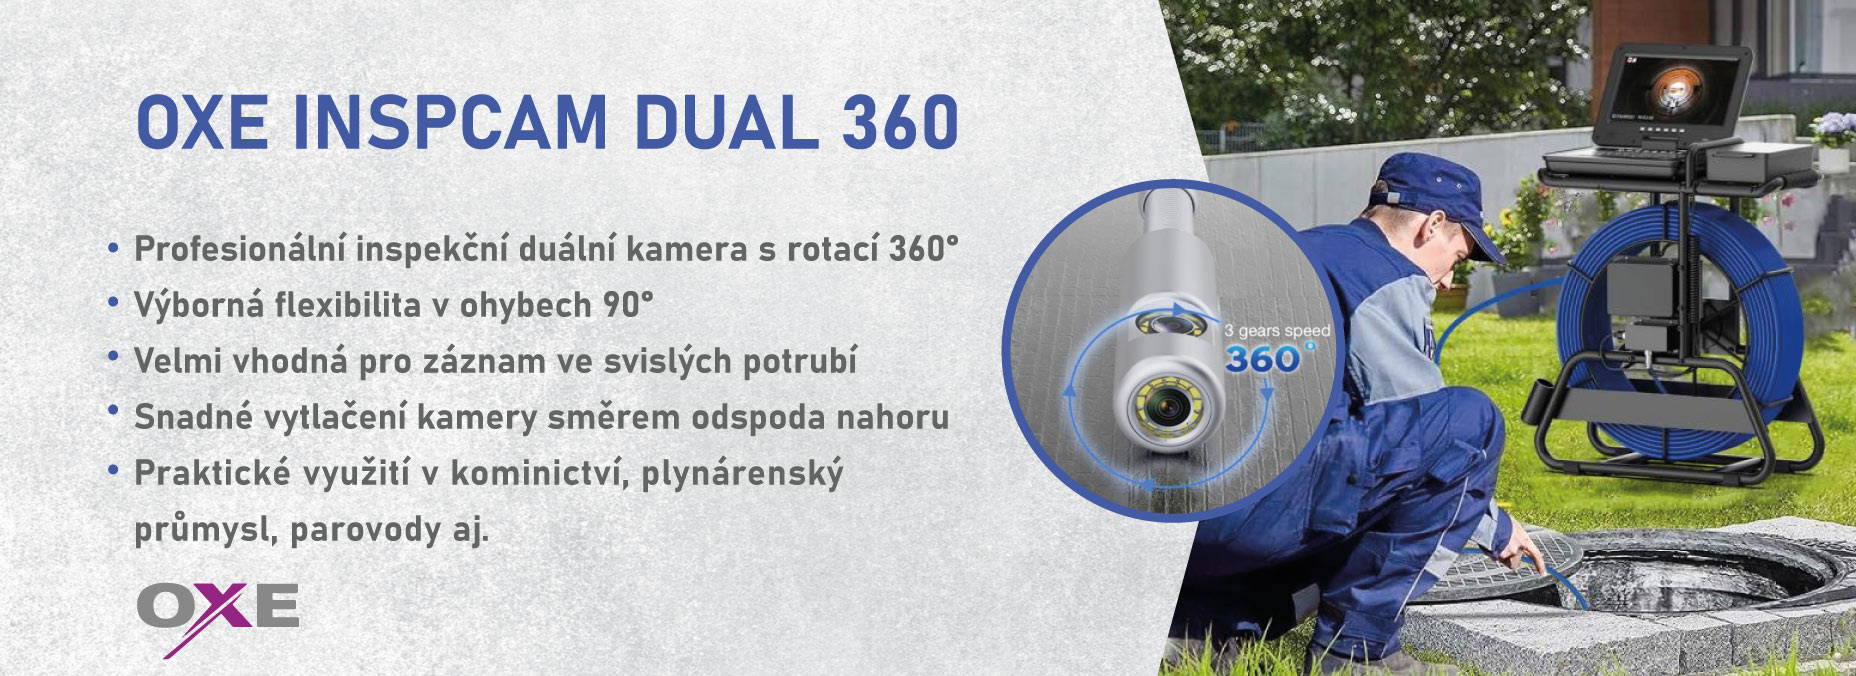 OXE InspCam Dual 360 - profesionální inspekční kamera